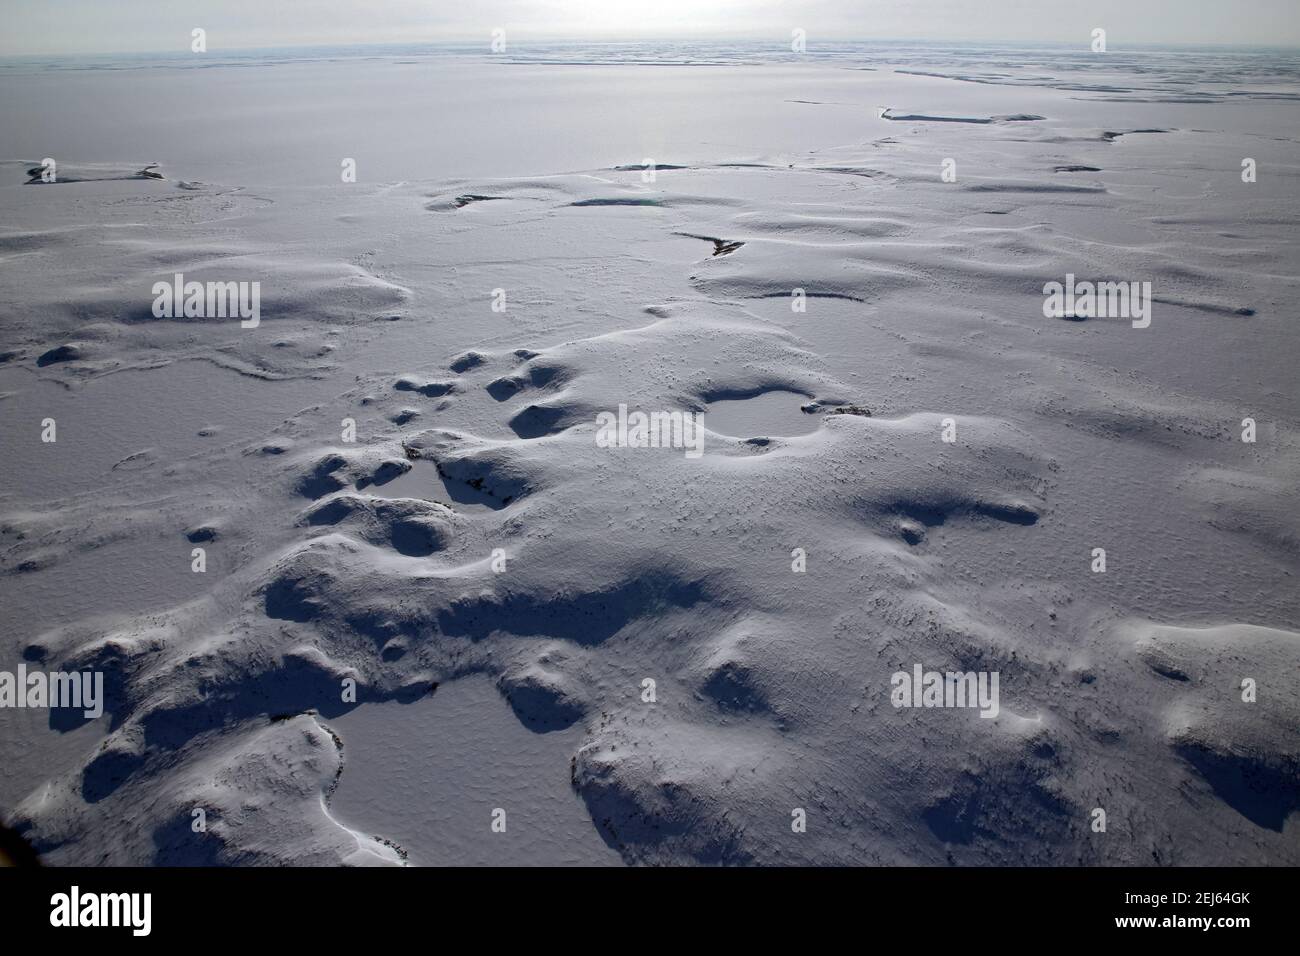 Vue aérienne en hiver du paysage gelé de la toundra arctique, recouvert de neige, près de Tuktoyaktuk, Territoires du Nord-Ouest, Canada. Banque D'Images